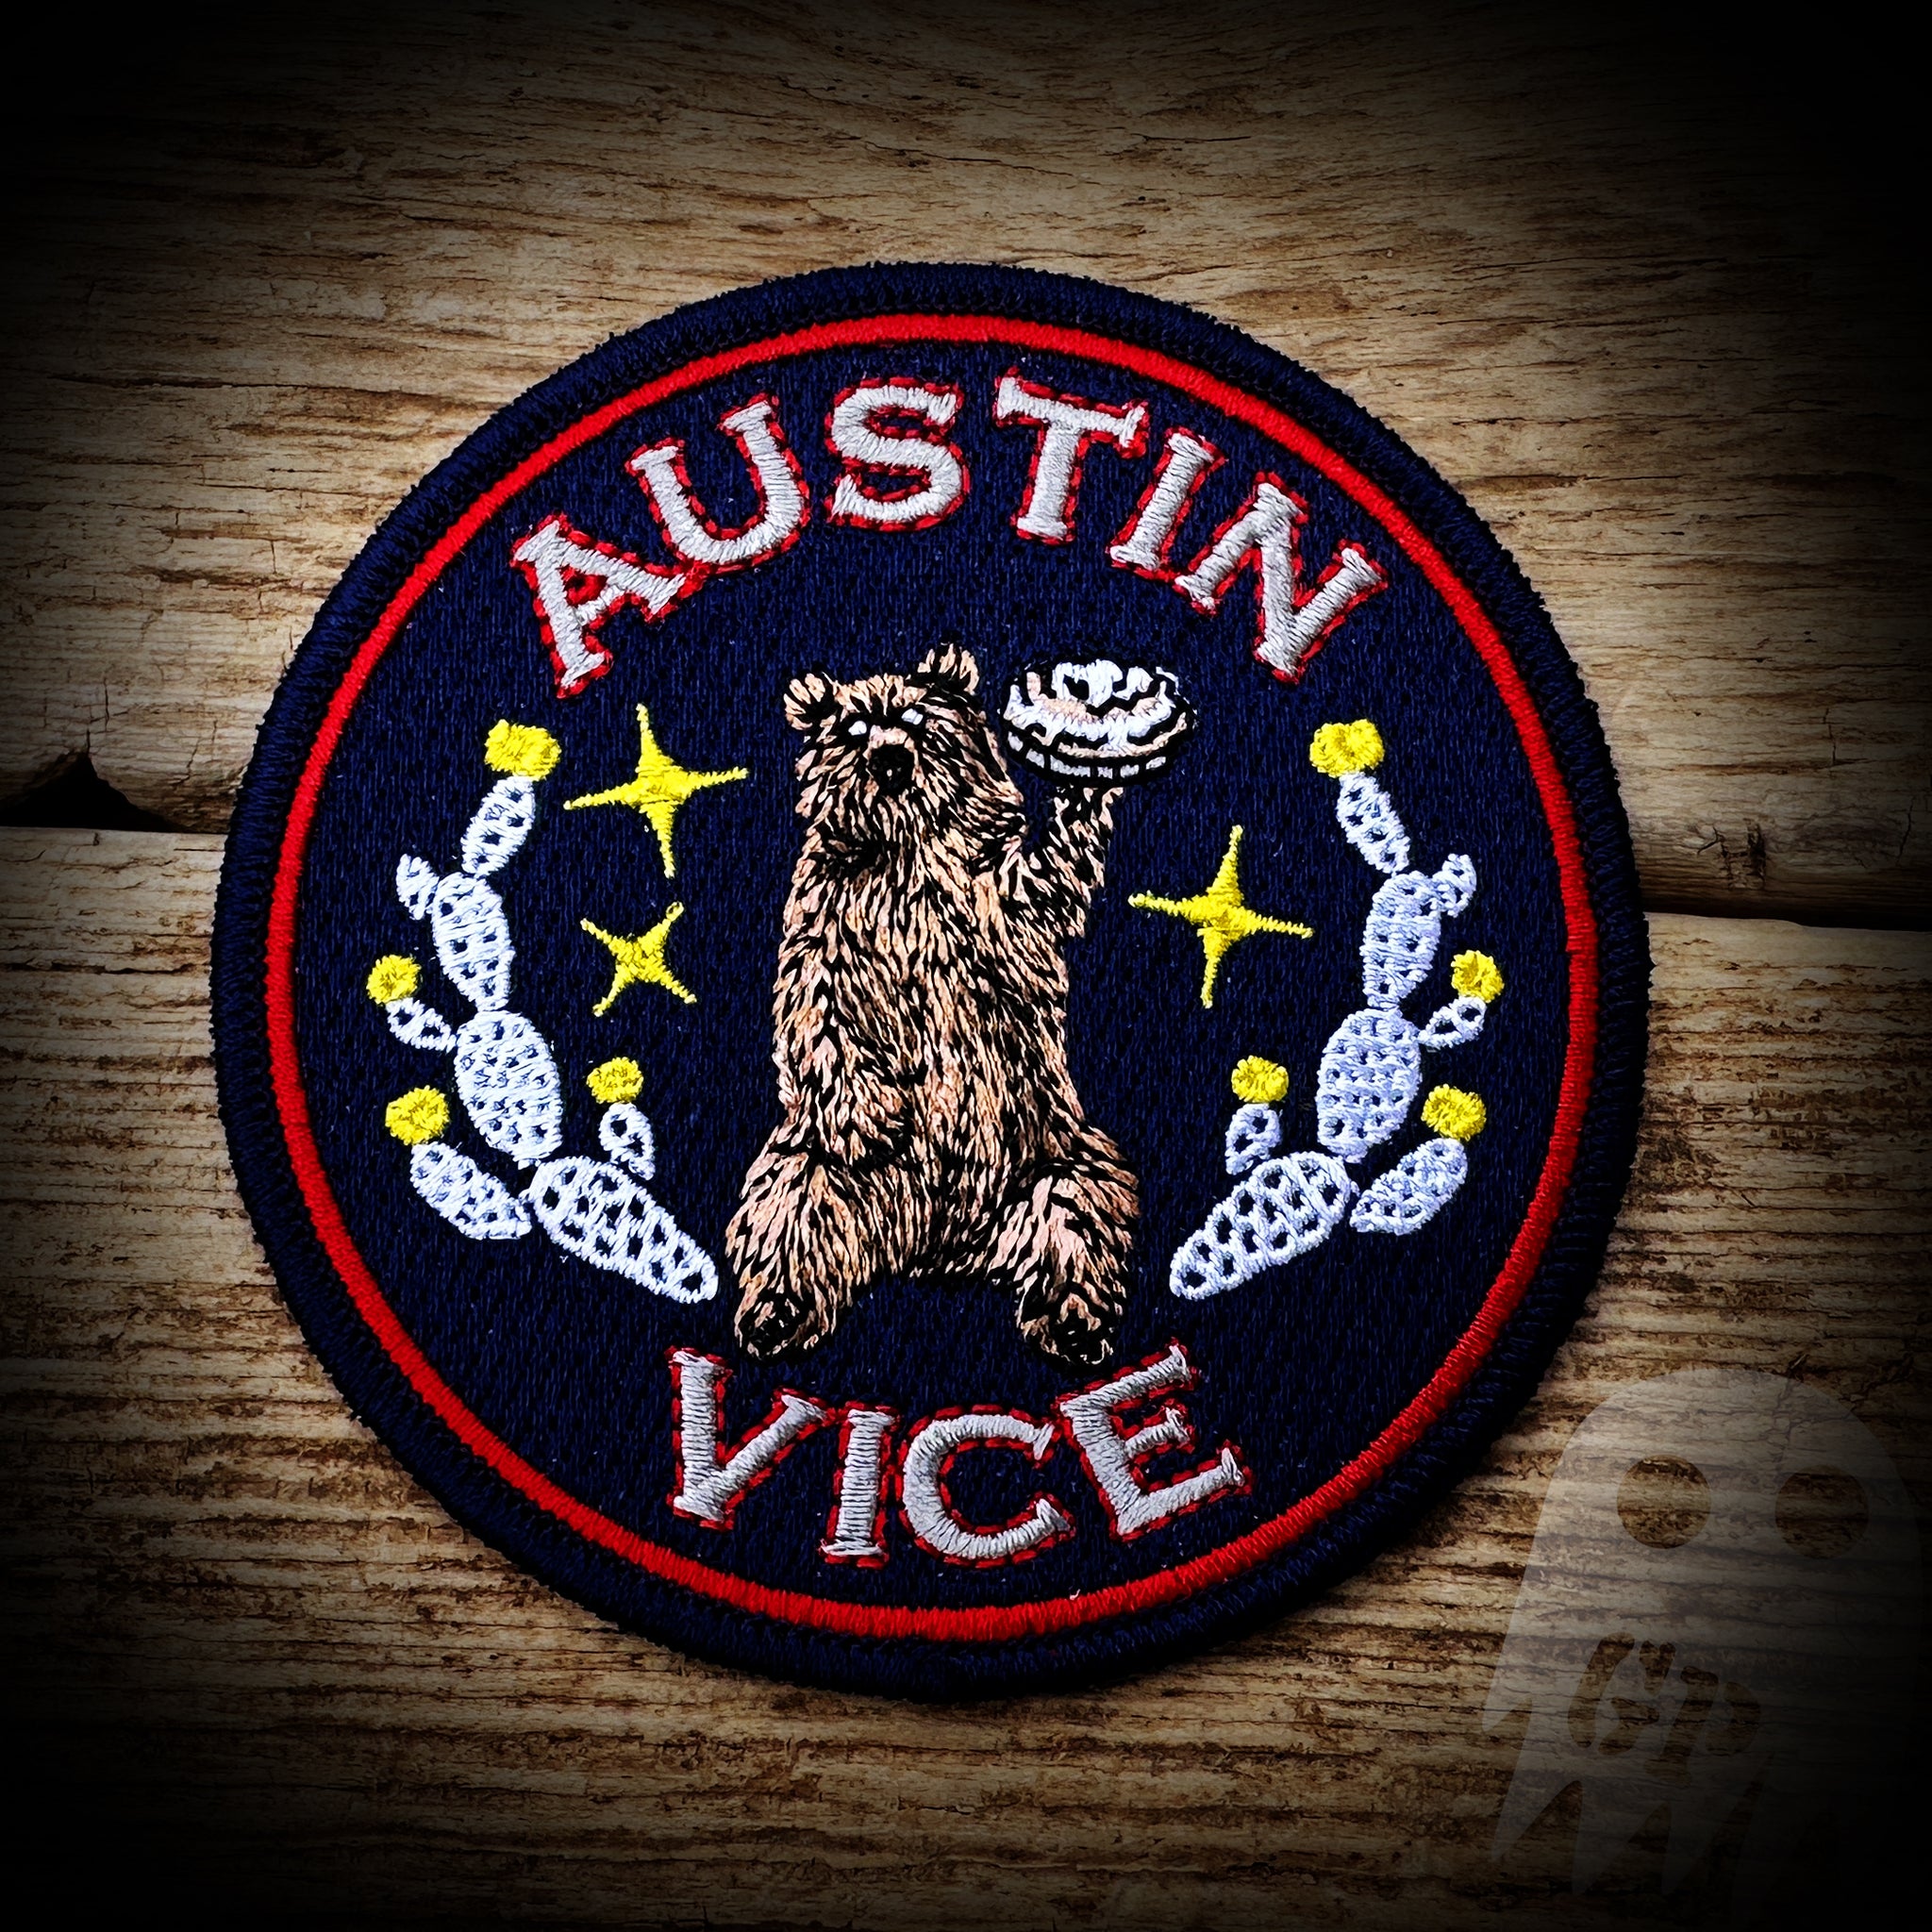 VICE - Austin, TX PD Vice Unit Patch - Authentic